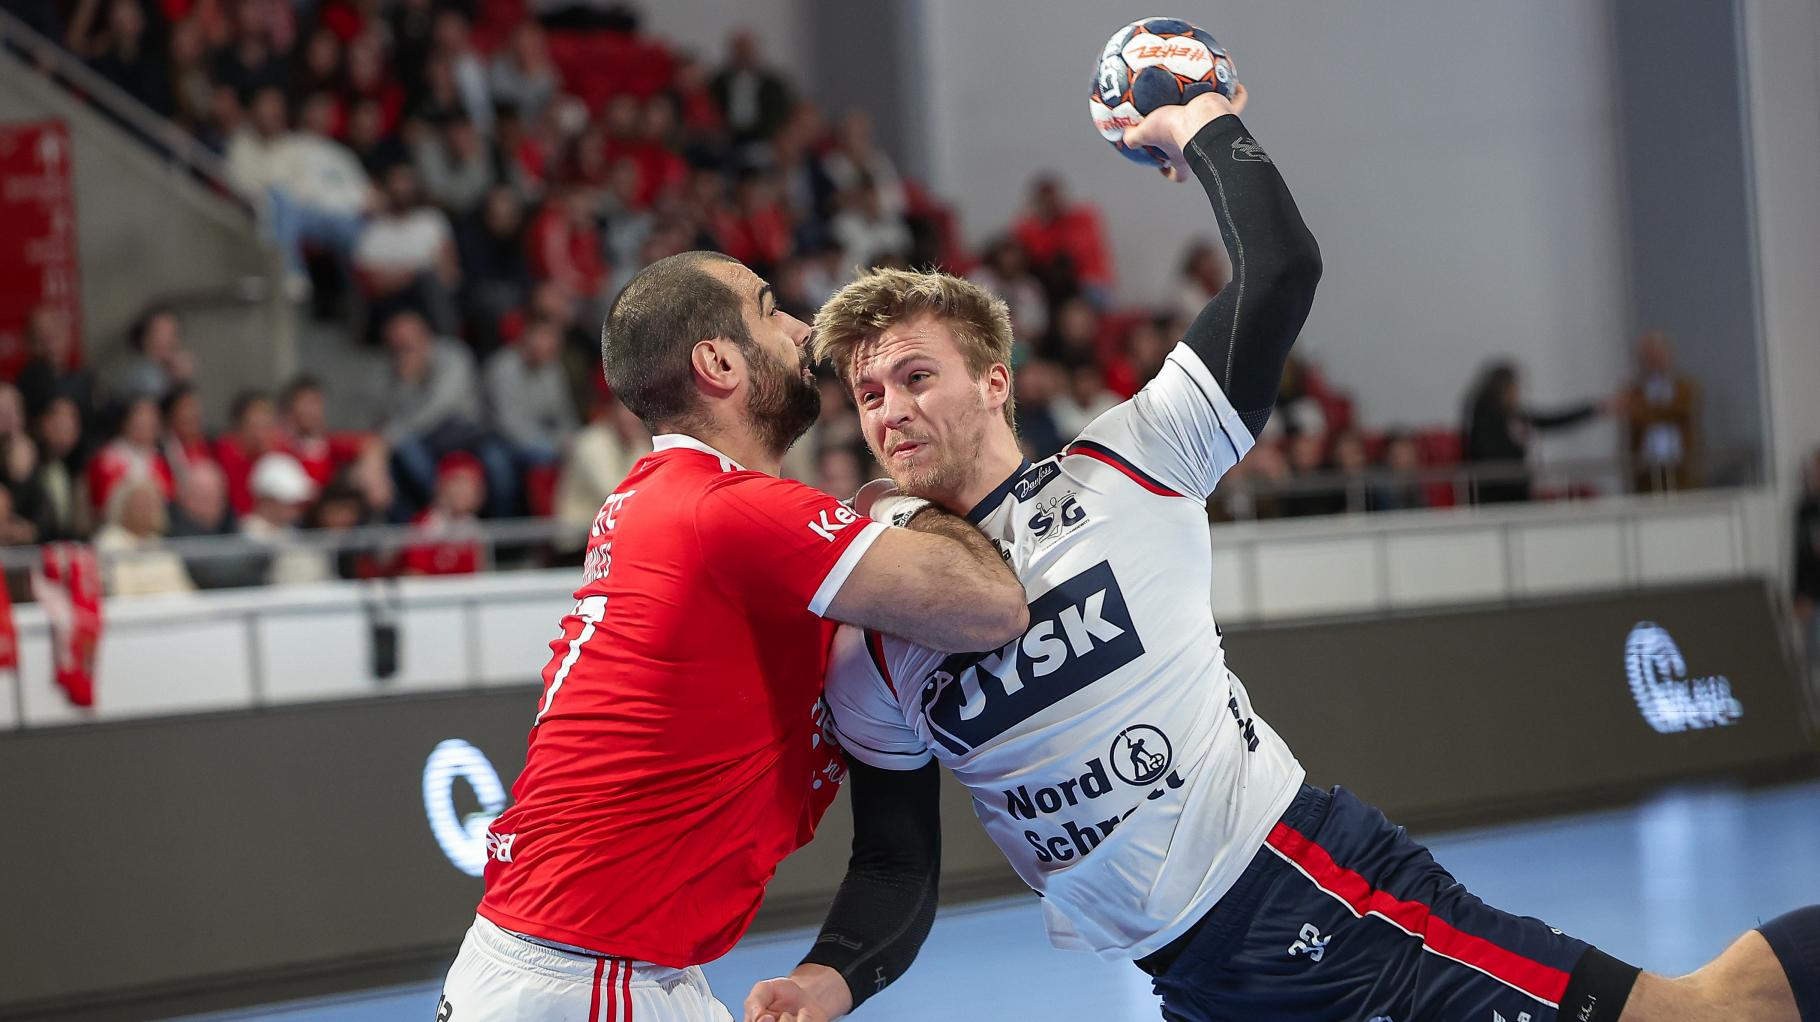 Handballwoche.de Liveticker aus der Halle SG Flensburg-Handewitt will gegen Lissabon nichts anbrennen lassen